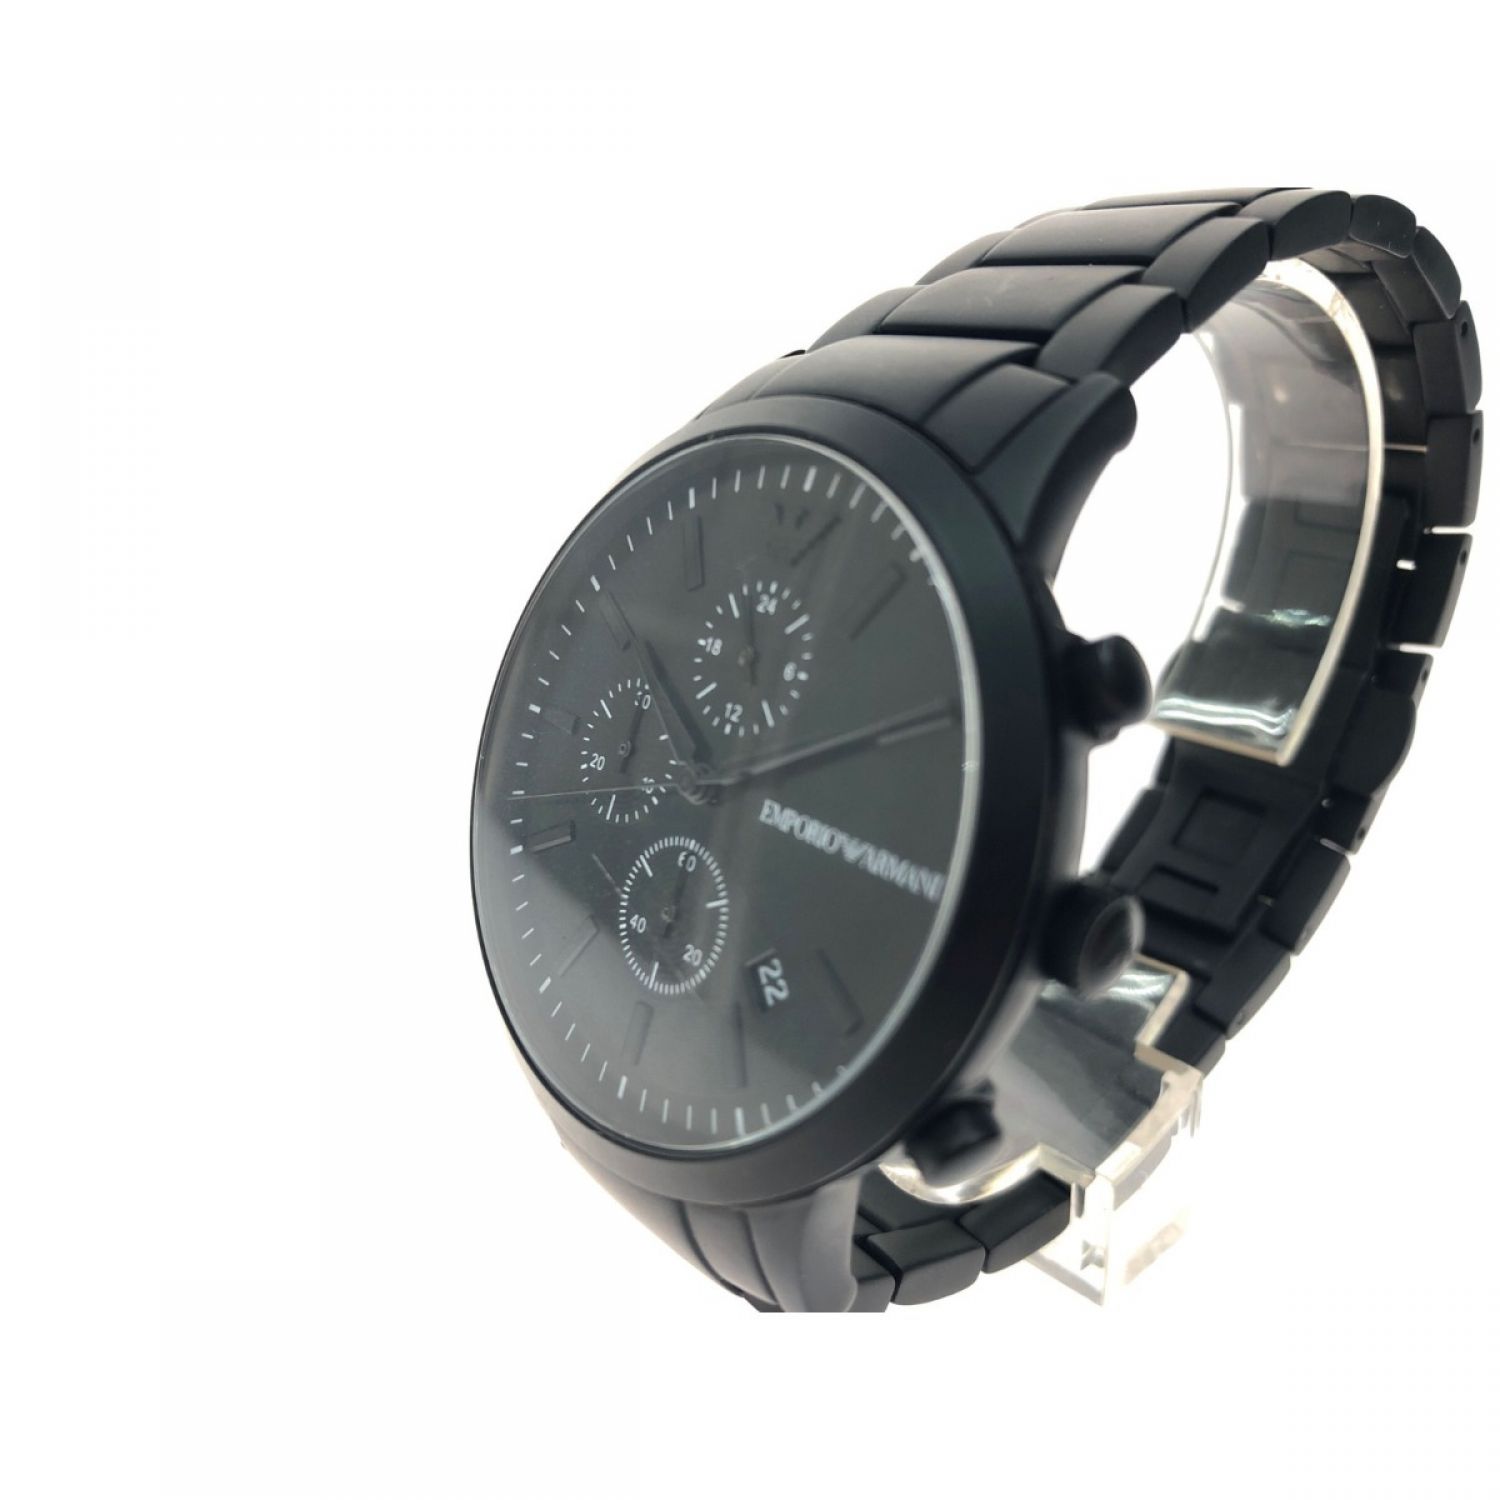 絶妙なデザイン 329 EMPORIO ARMANI アルマーニ時計 メンズ腕時計